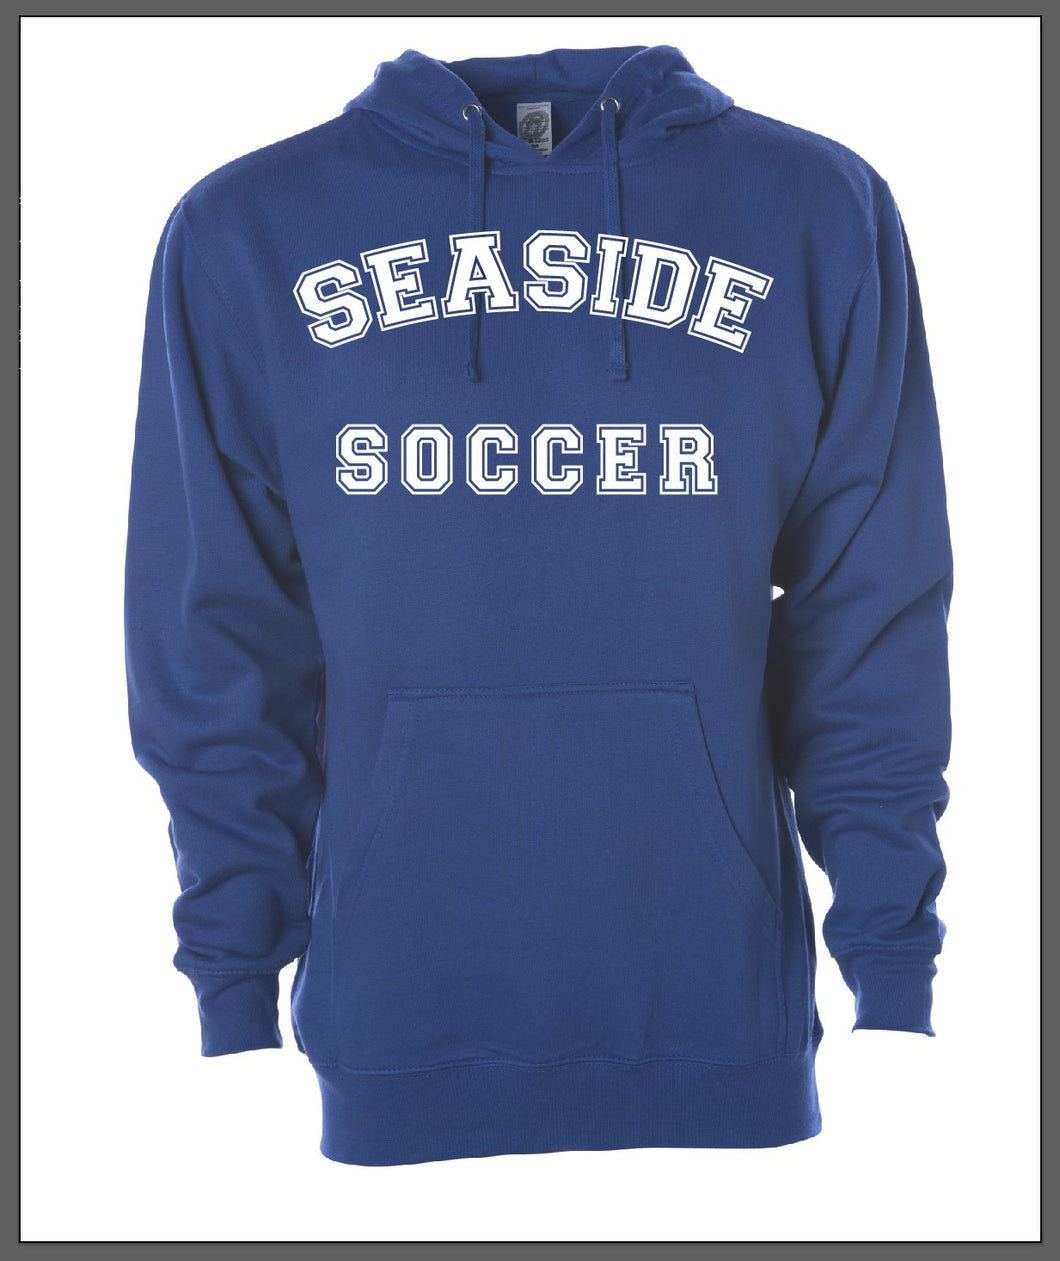 Seaside Soccer Hoodie - Royal Blue